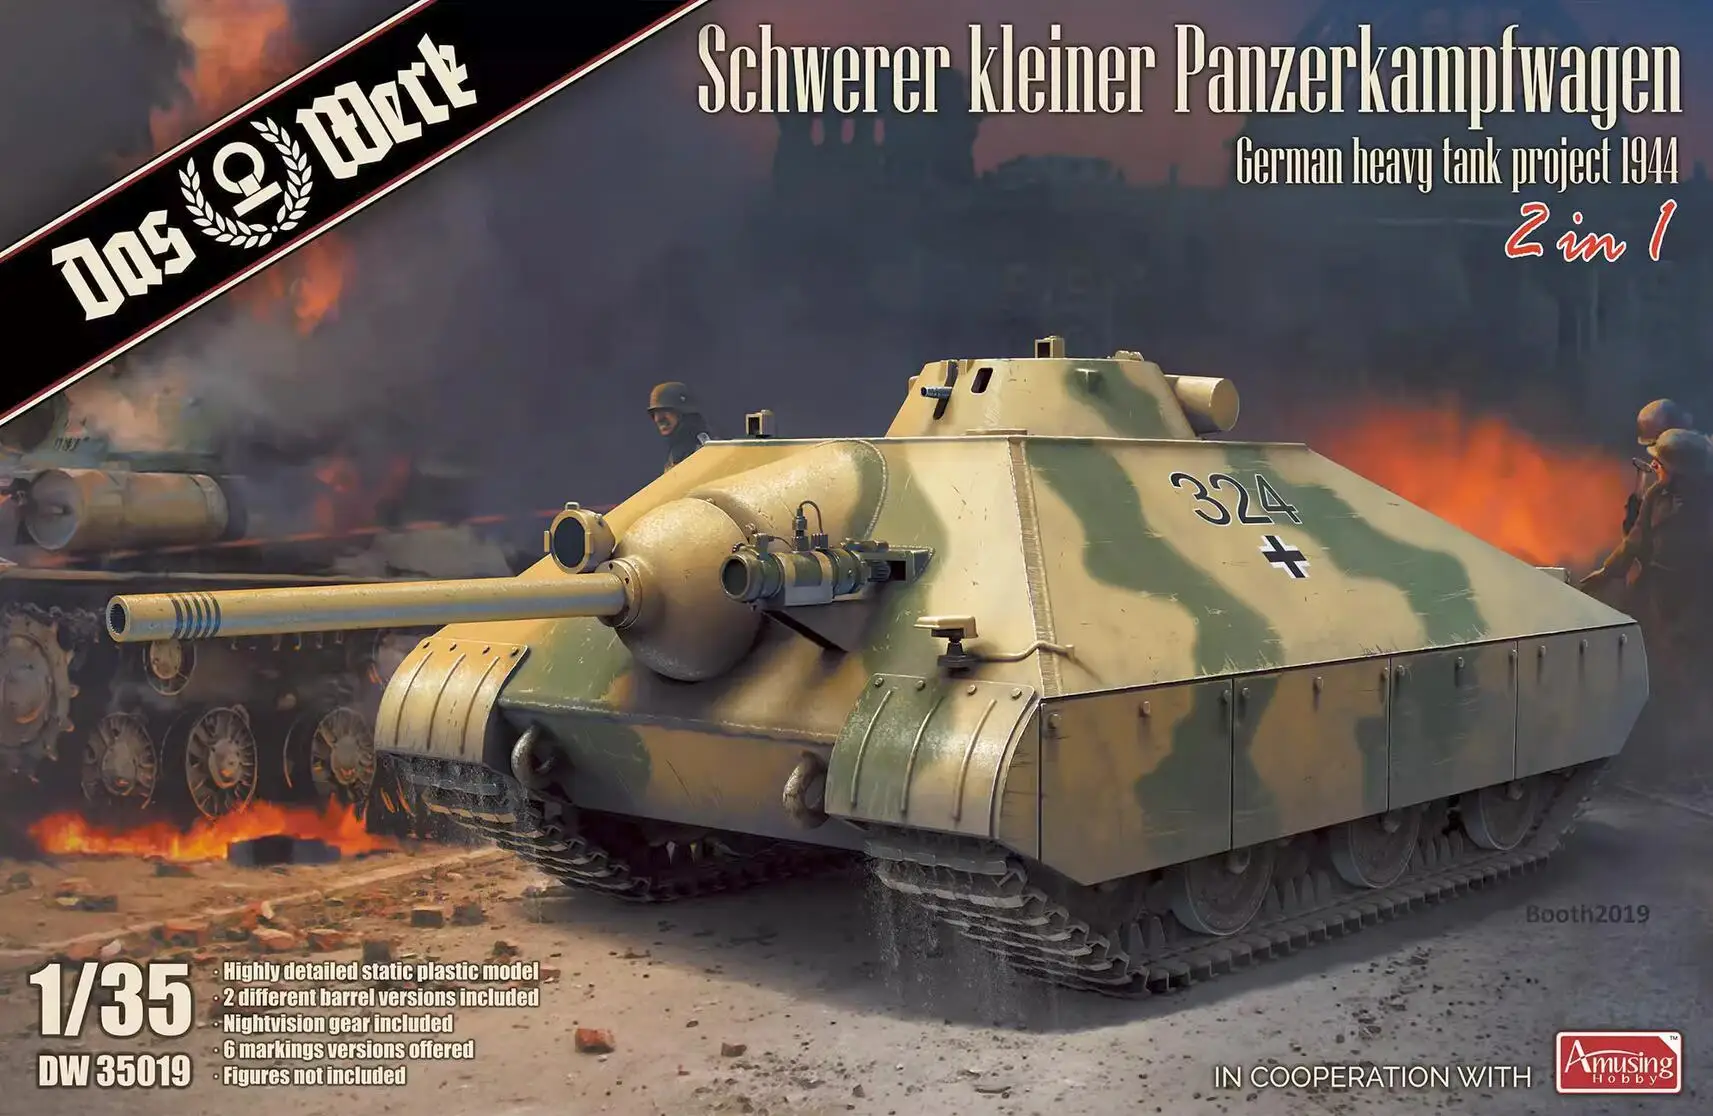 

DAS WERK DW35019 1/35 Scale Schwerer kleiner Panzerkampfwagen German Heavy Tank Project 1944 (2 in 1) Model Kit